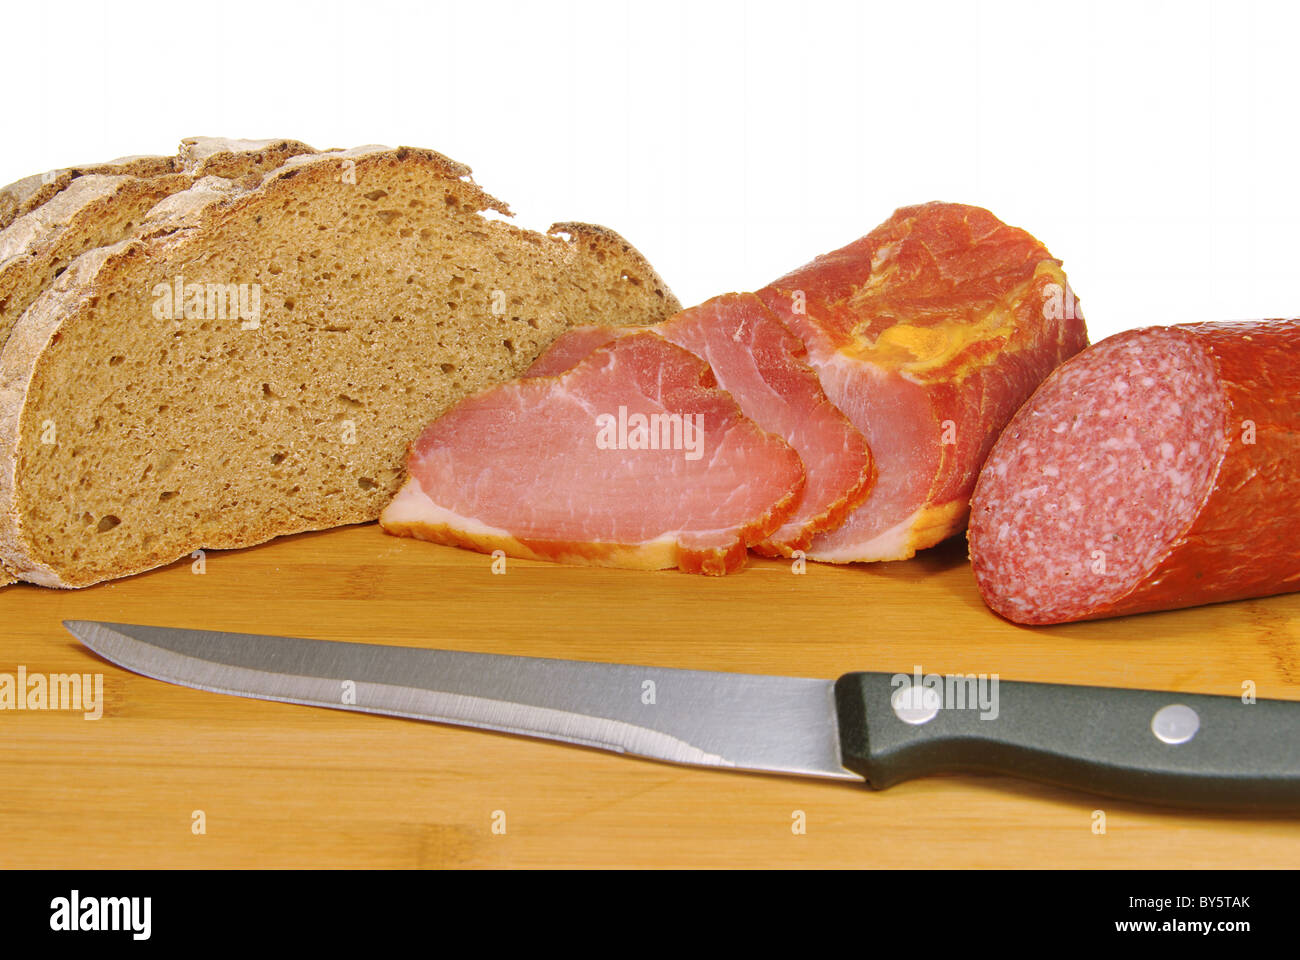 Schinken-Brot-Salami - Schinken-Brot Salami 01 Stockfoto